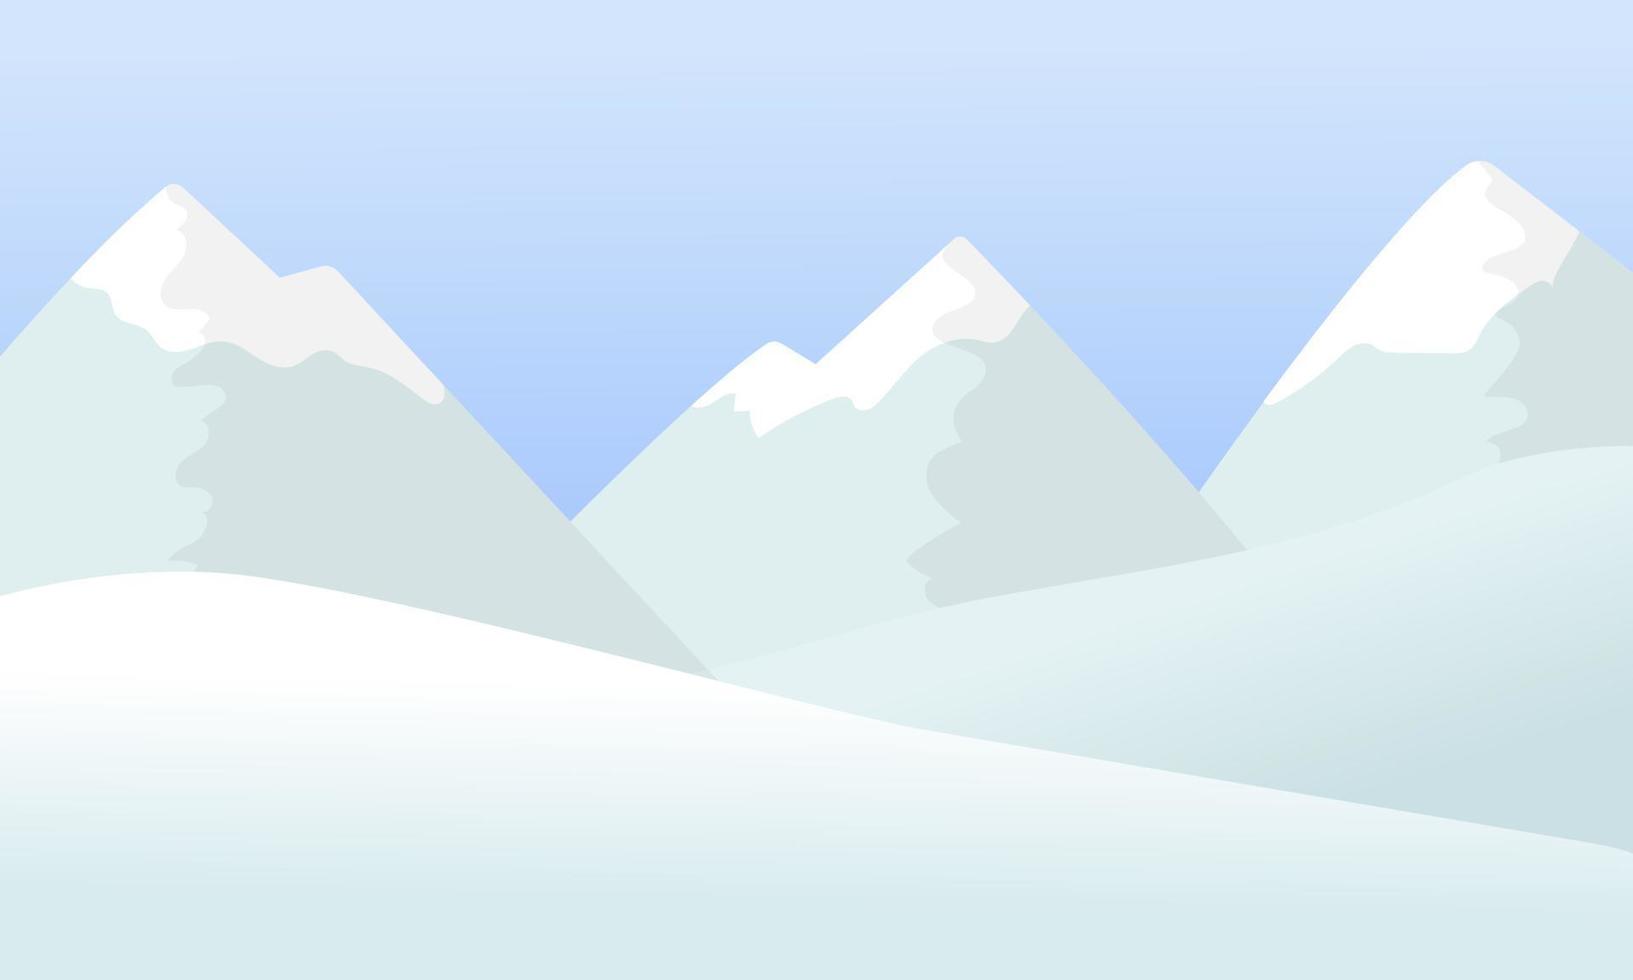 paisaje de montañas nevadas de invierno. vector